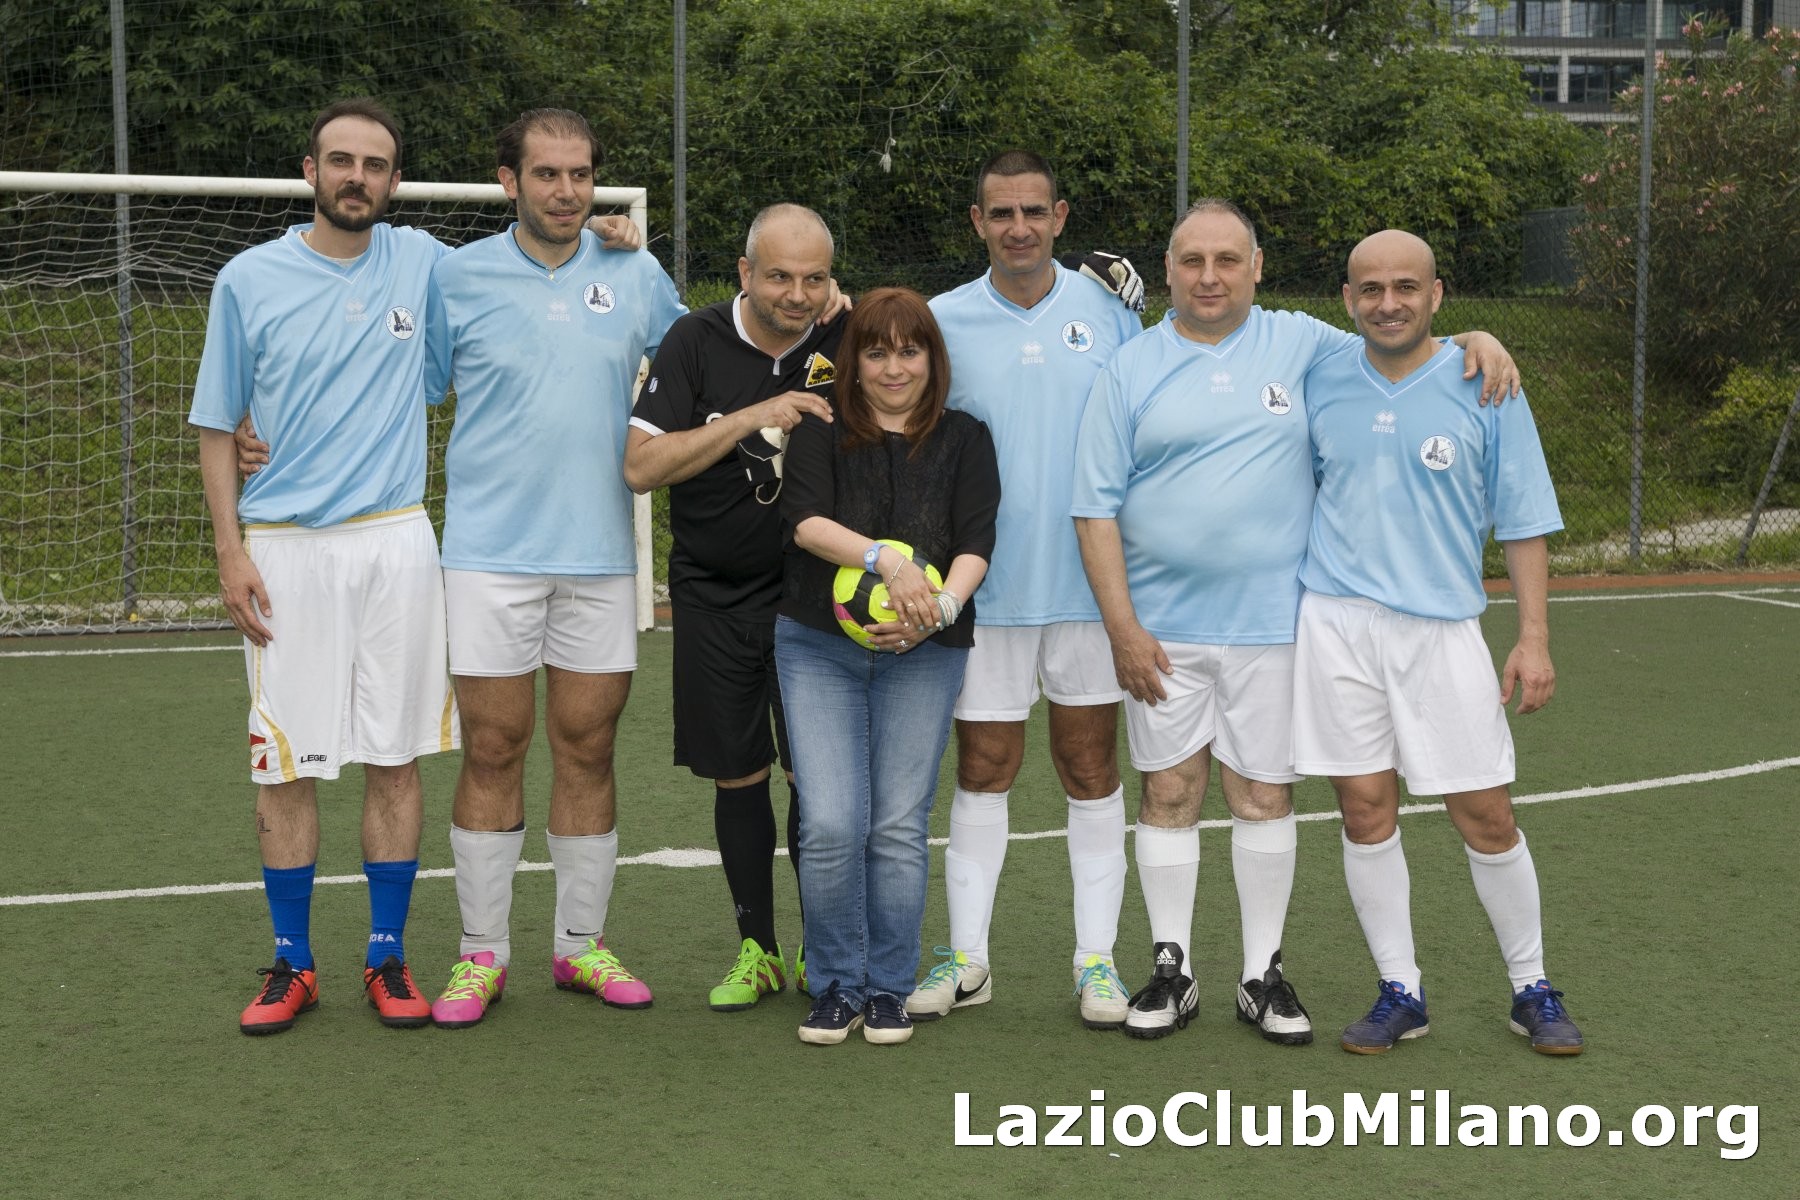 Lazio Club Milano (8 Lo Sardo 2 Magnante 1 Tosi Patty 16 Maggioli 6 Checchia 3 Caboni)